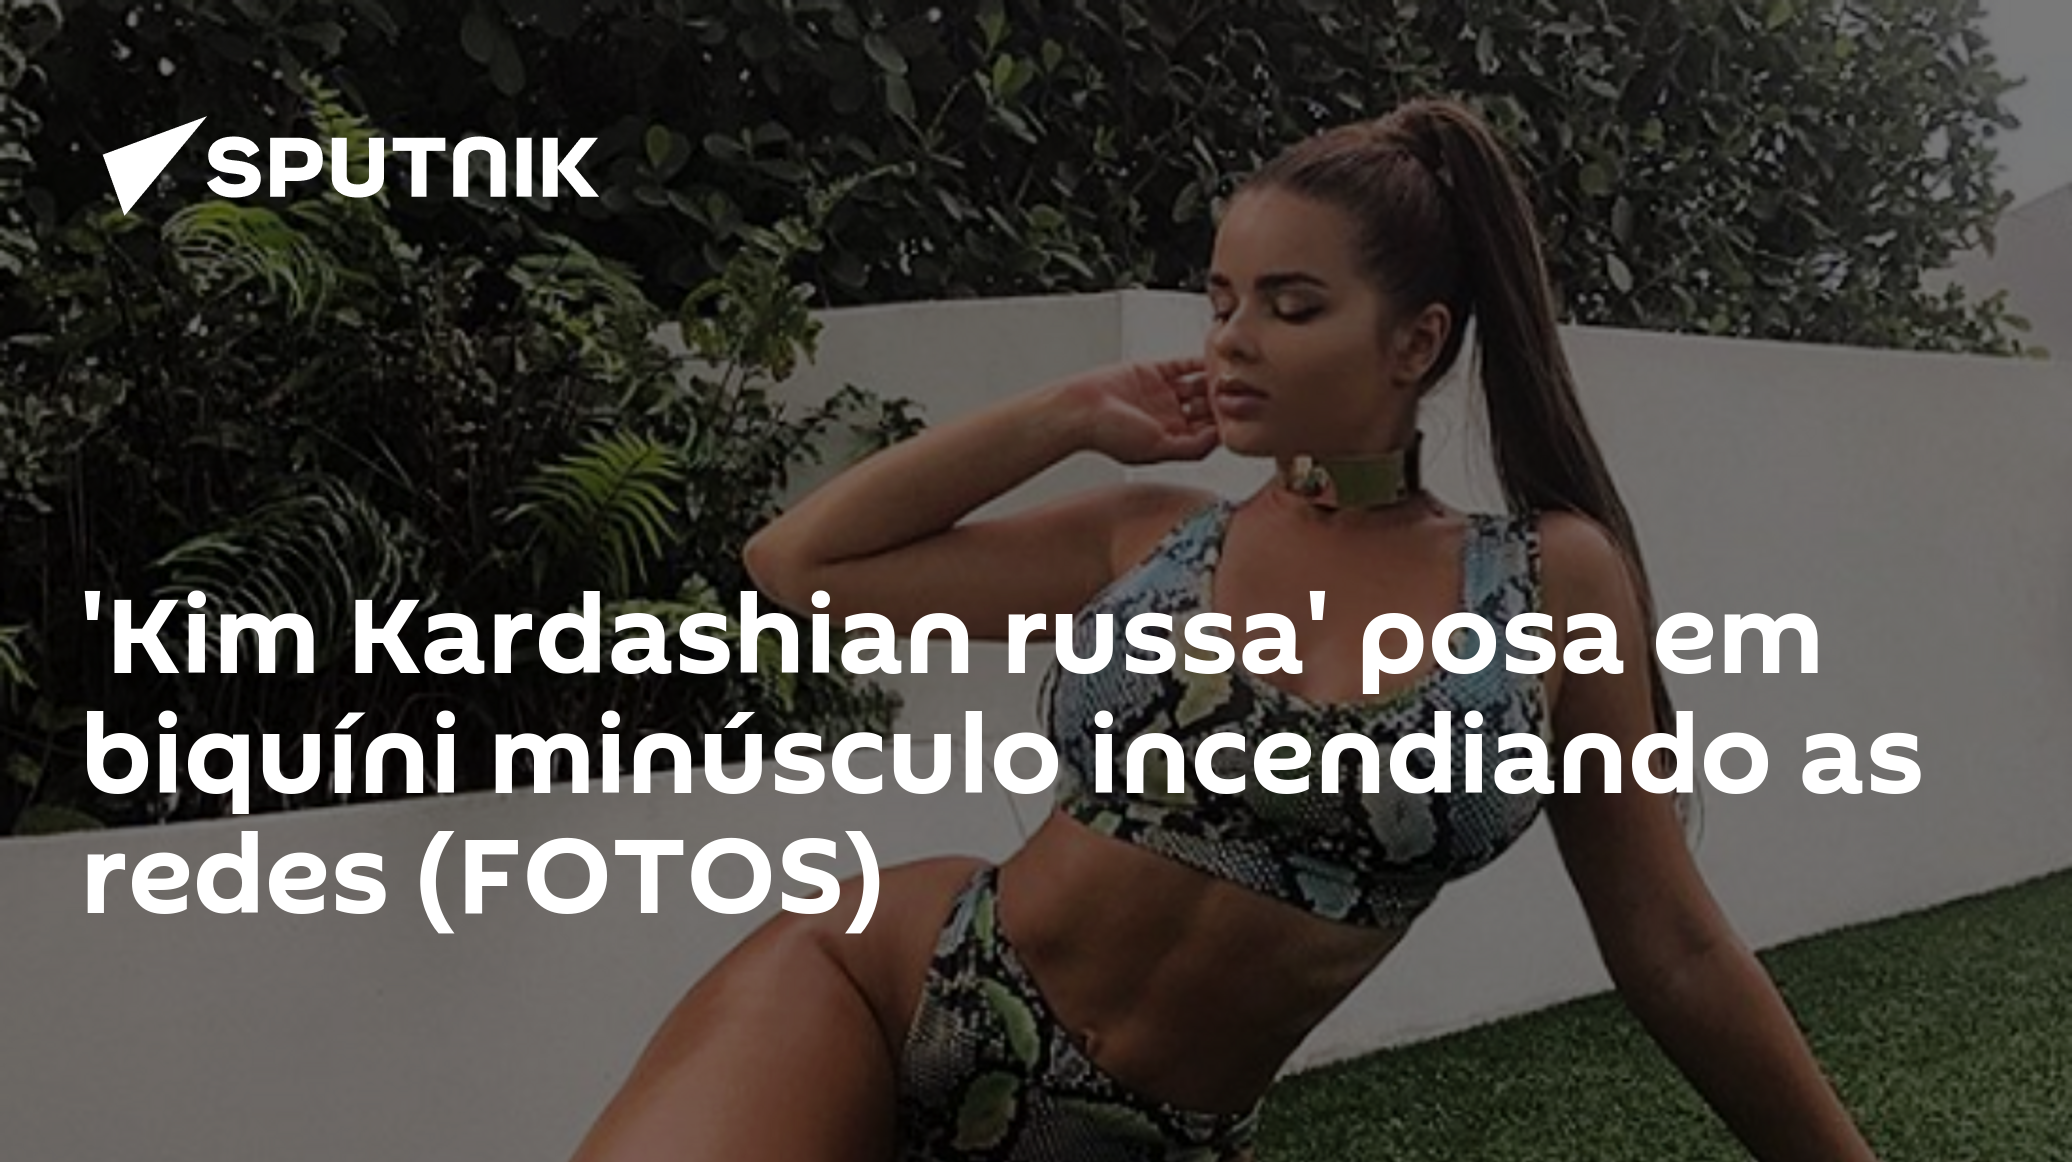 Kim Kardashian russa' exibe curvas usando biquíni e não só (Foto, Vídeos) -  29.06.2019, Sputnik Brasil